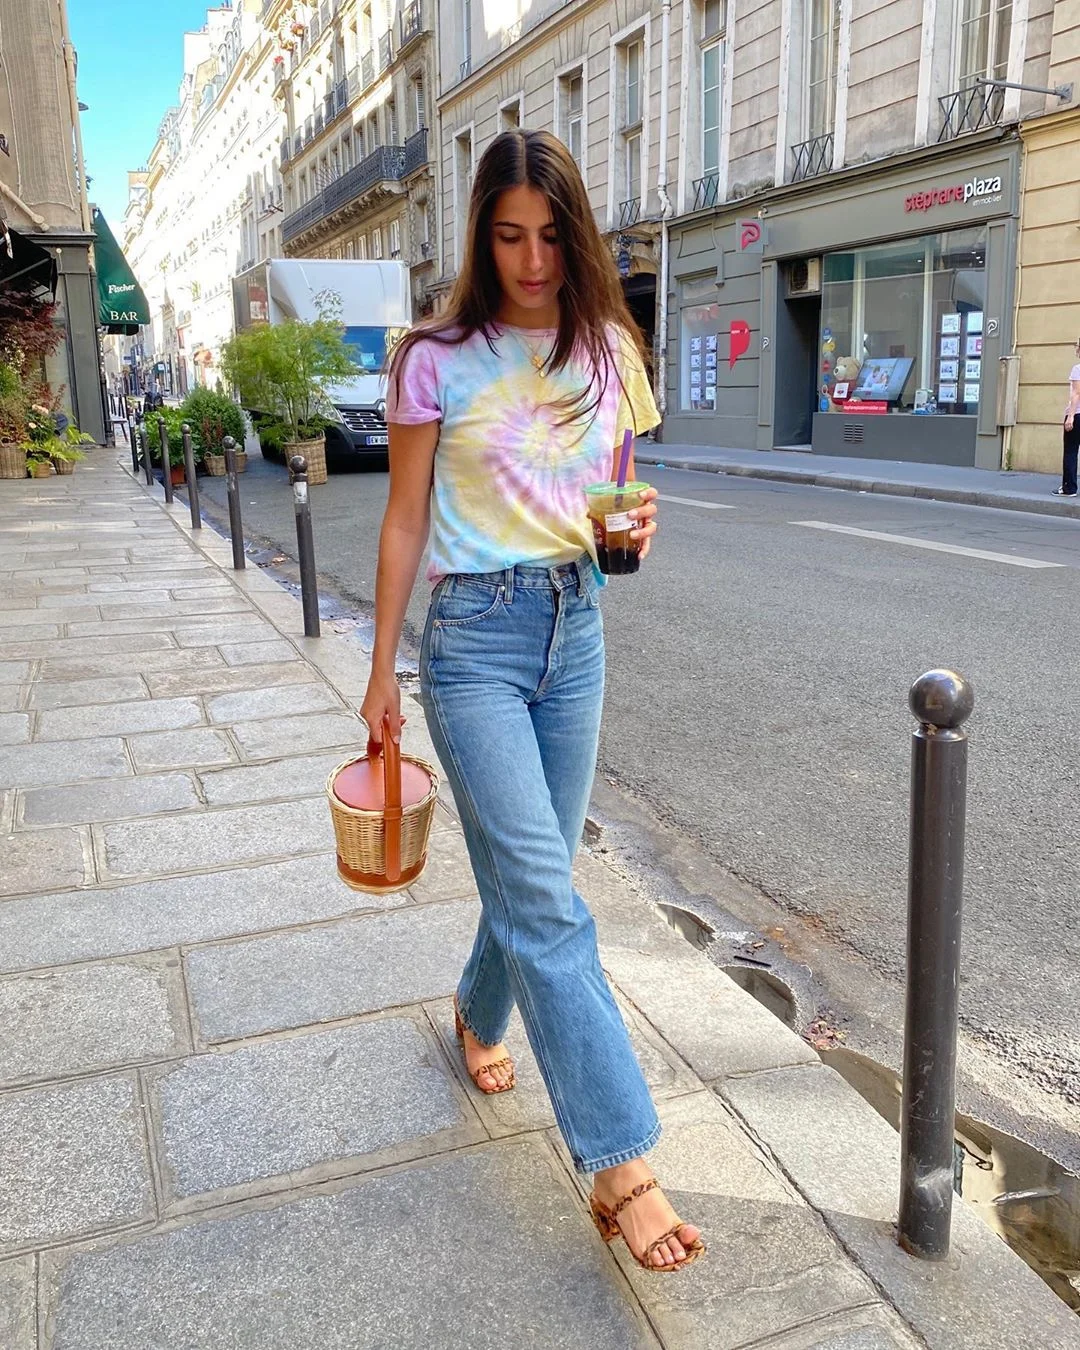 Як літом одягаються французькі жінки: 50 прикладів з Instagram - фото 484314